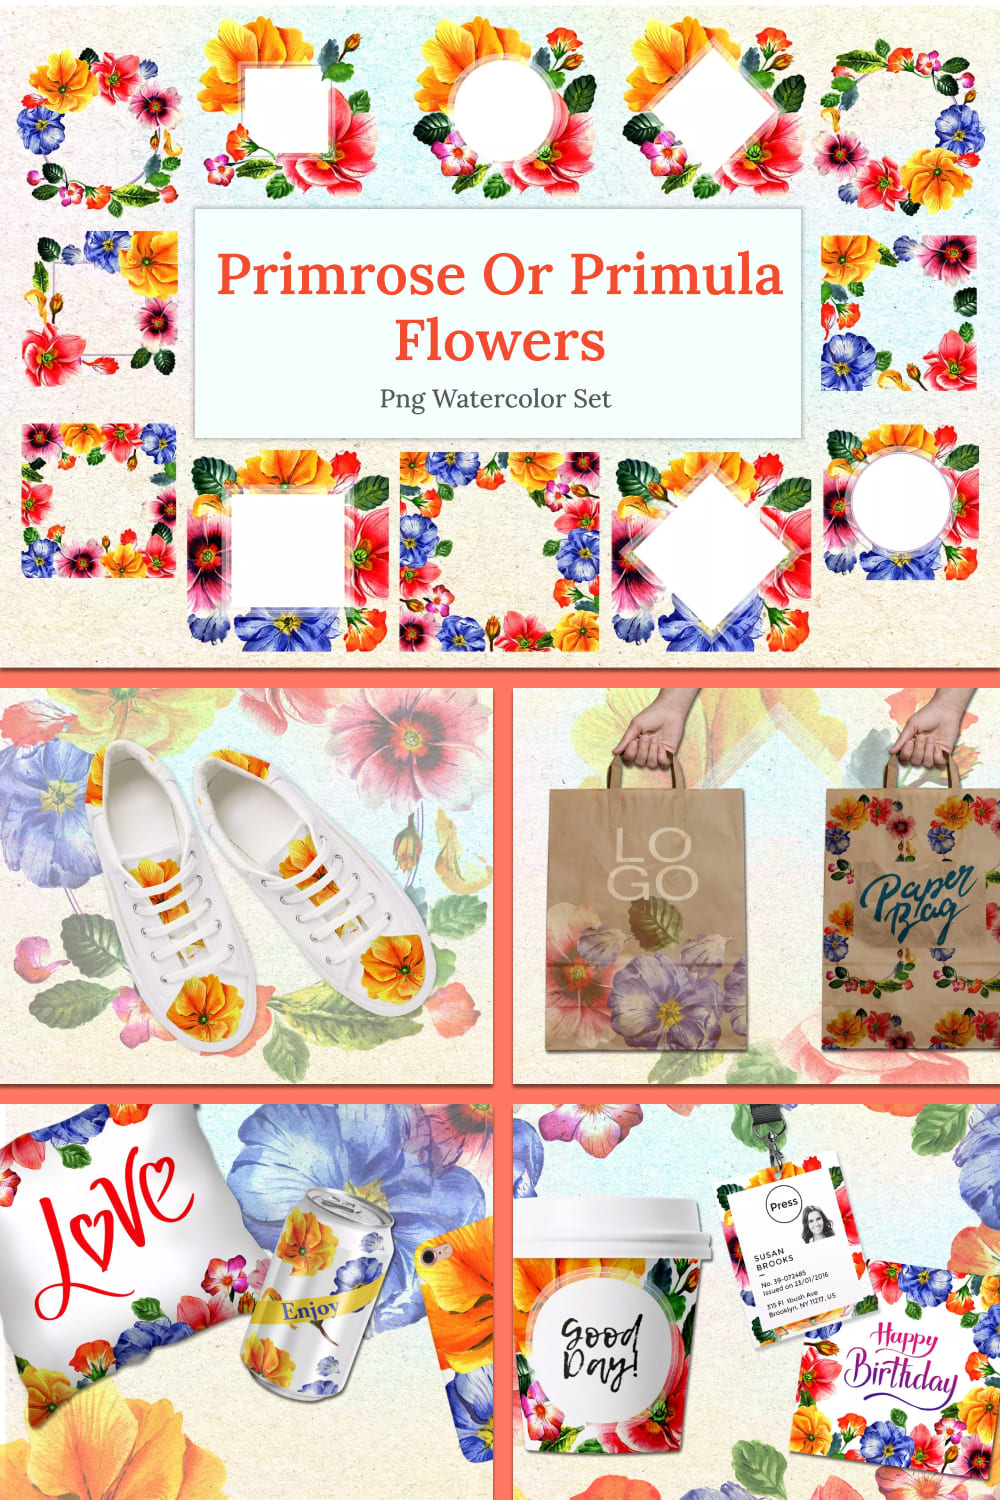 Primrose or primula flowers png watercolor set.